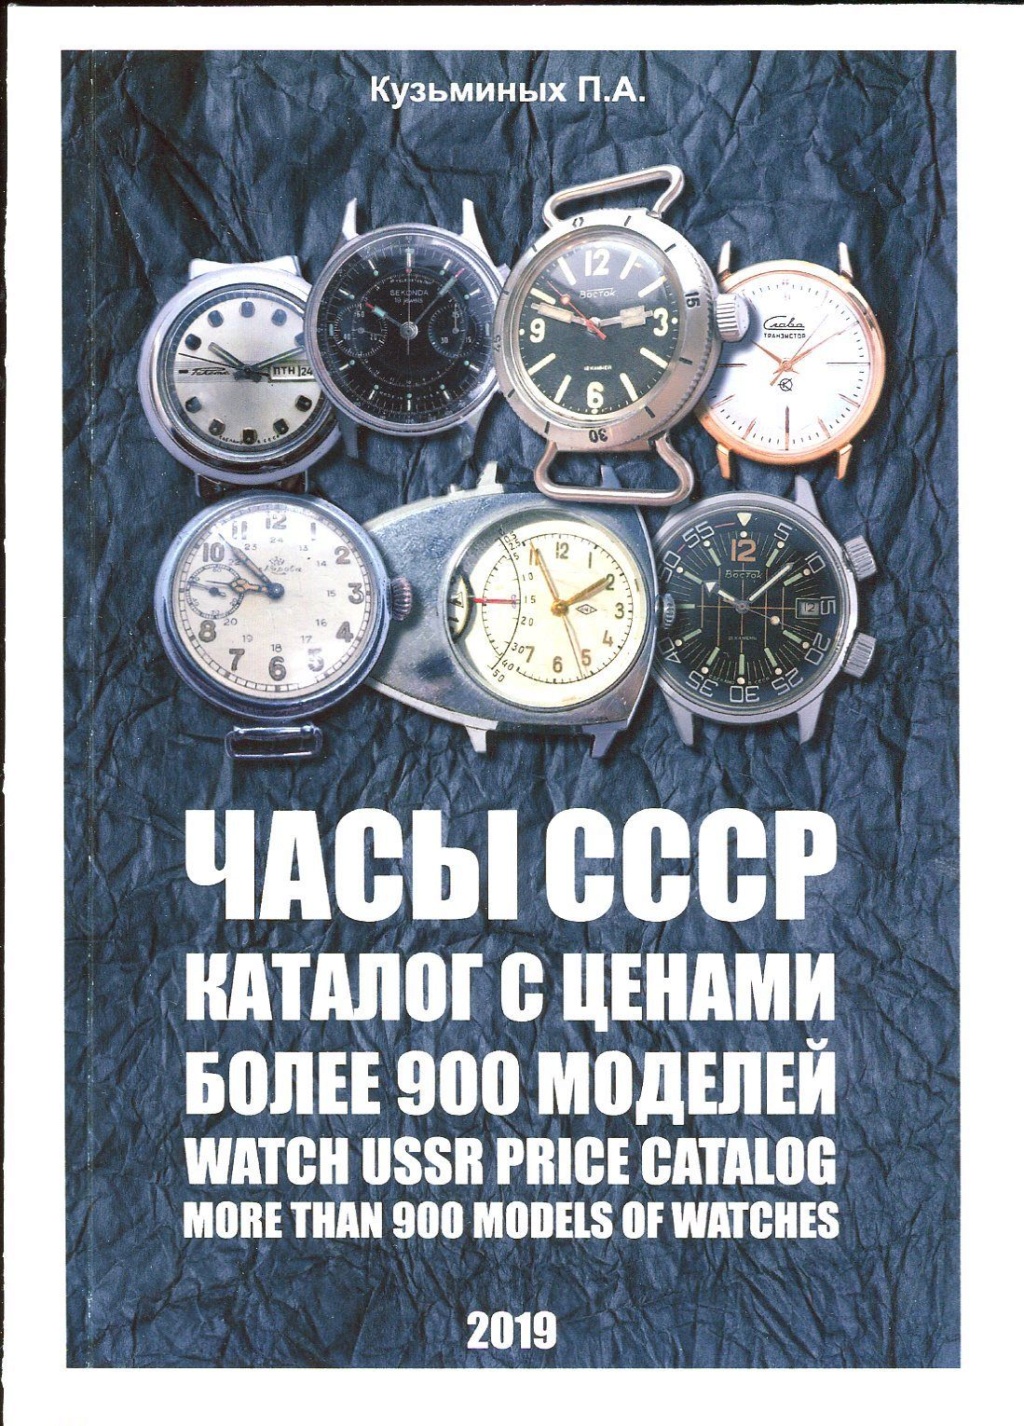 Les marques soviétiques pour l'exportation - Page 5 900mon10